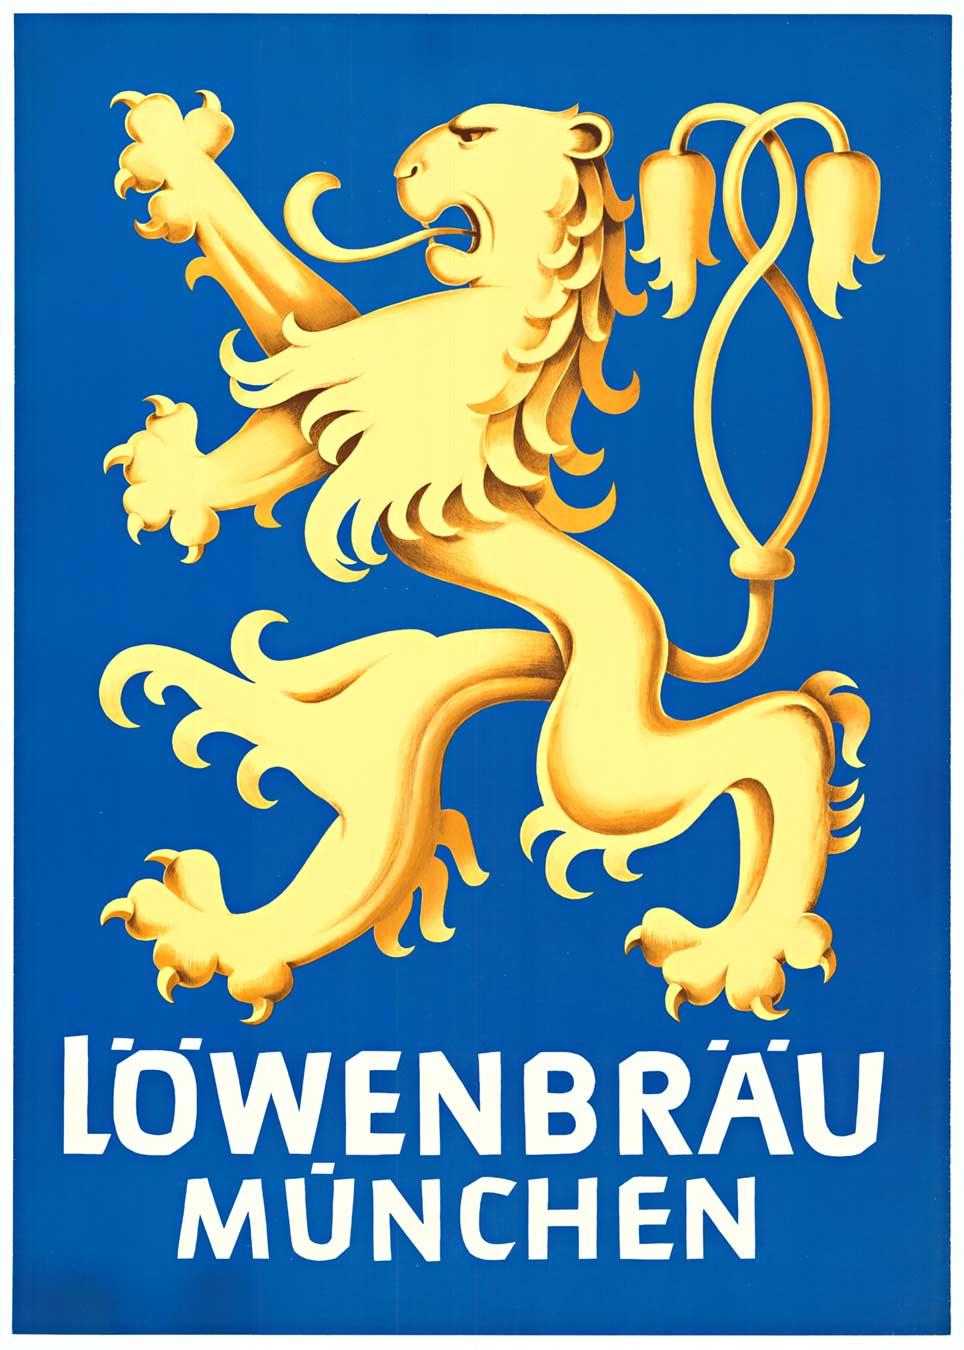 Print Unknown - Affiche vintage originale de Lowenbrau Munchen avec lion (Löwenbräu München)